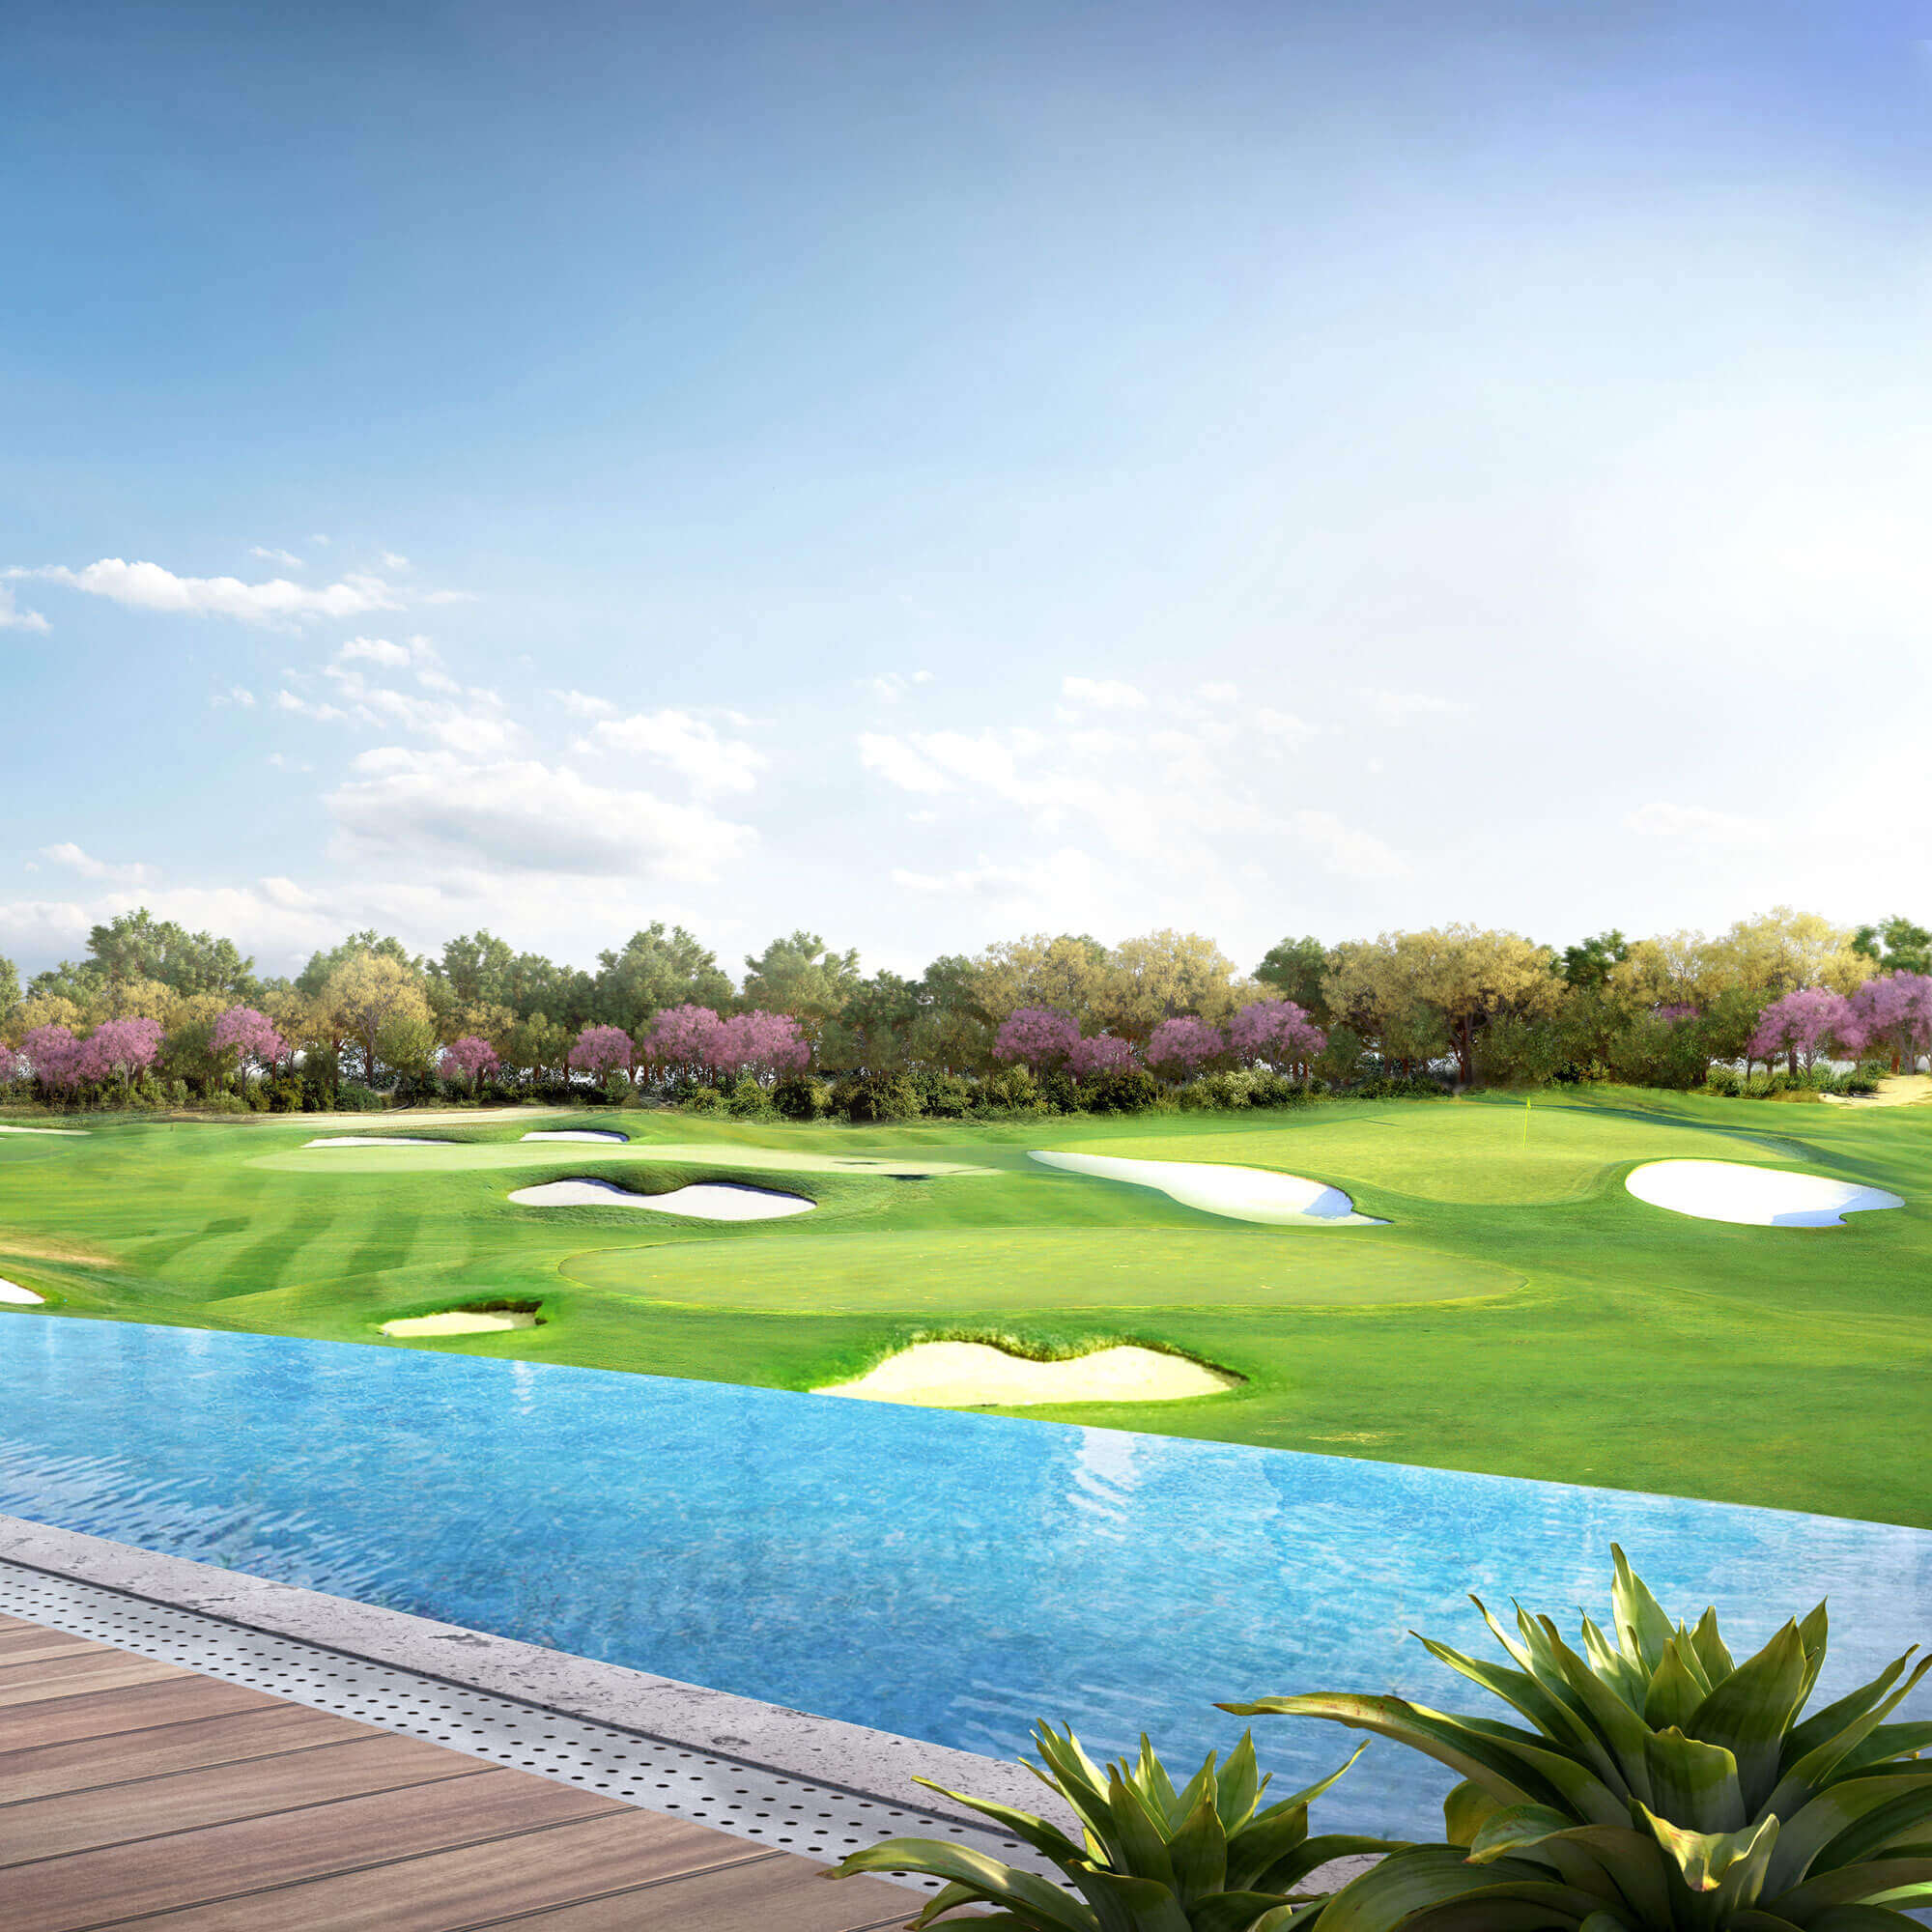 Sân Golf PGA đẳng cấp được thiết kế bởi huyền thoại golf Greg Norman